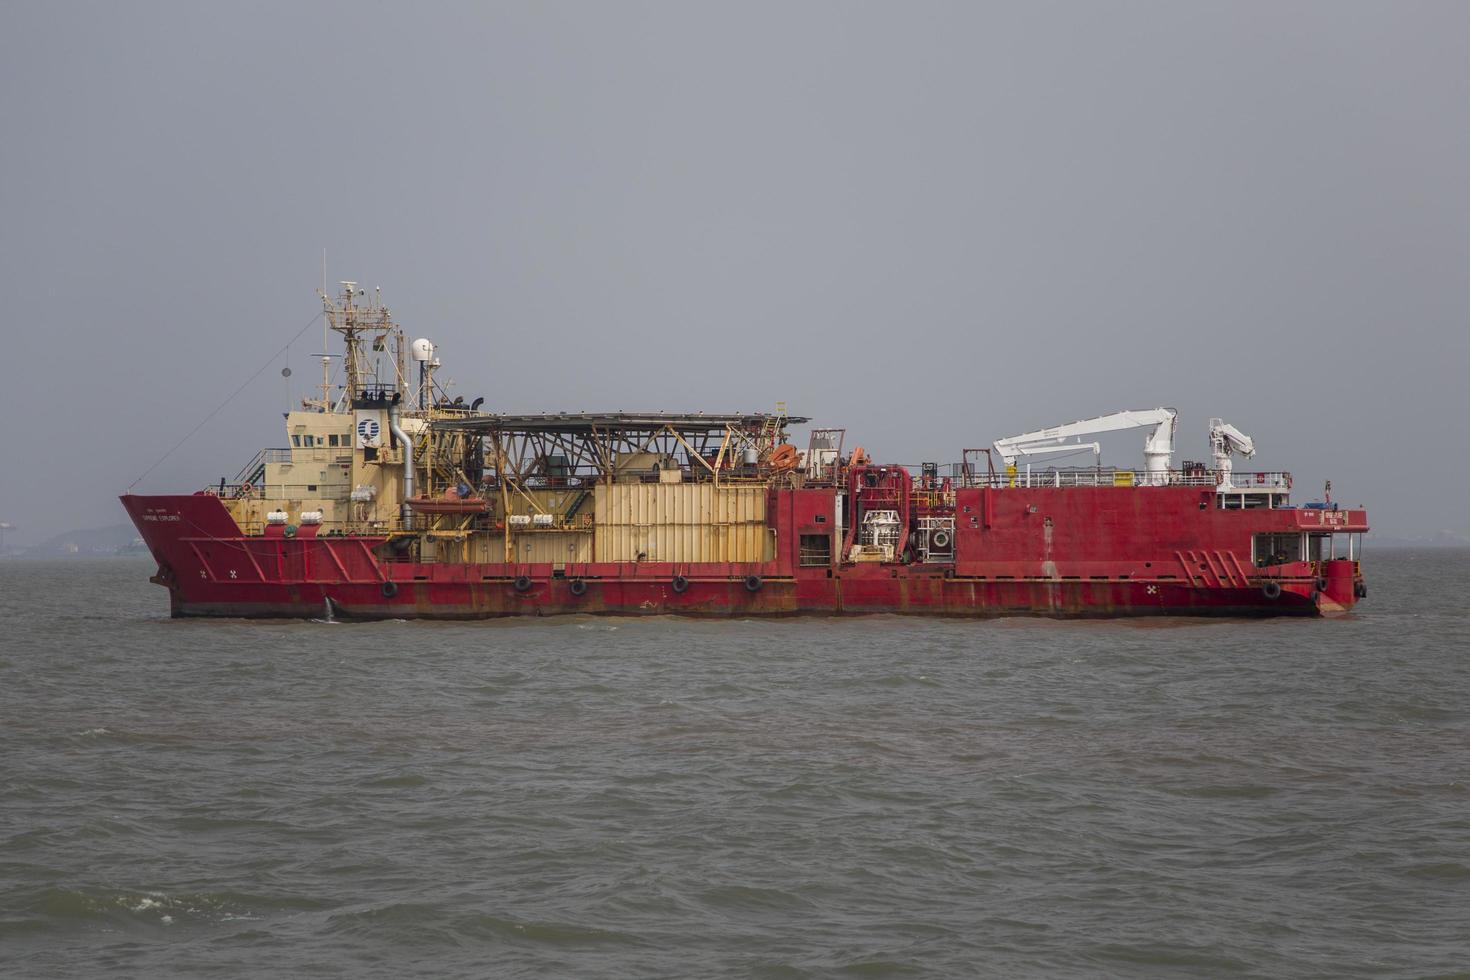 mumbai, indien, 11 oktober 2015 - industrifartyg i mumbais vatten. hamn- och sjöfartsnäringen sysselsätter många invånare direkt och indirekt. foto